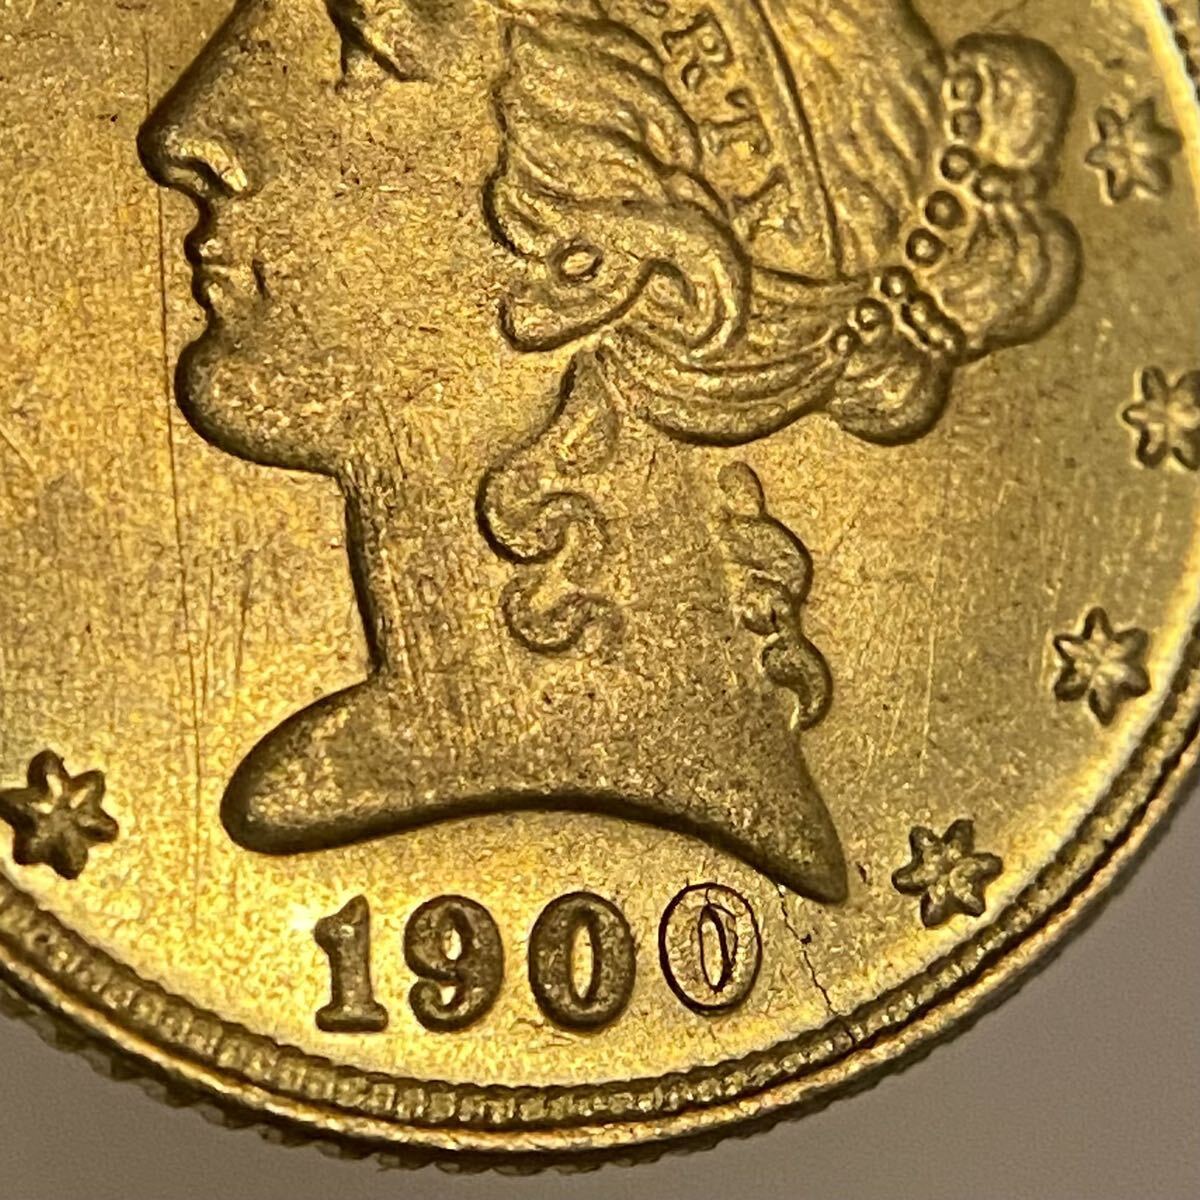 イーグル金貨 自由の女神 アメリカ古銭 約4.08g 1900年 一円貨幣 硬貨骨董品コインコレクションの画像4